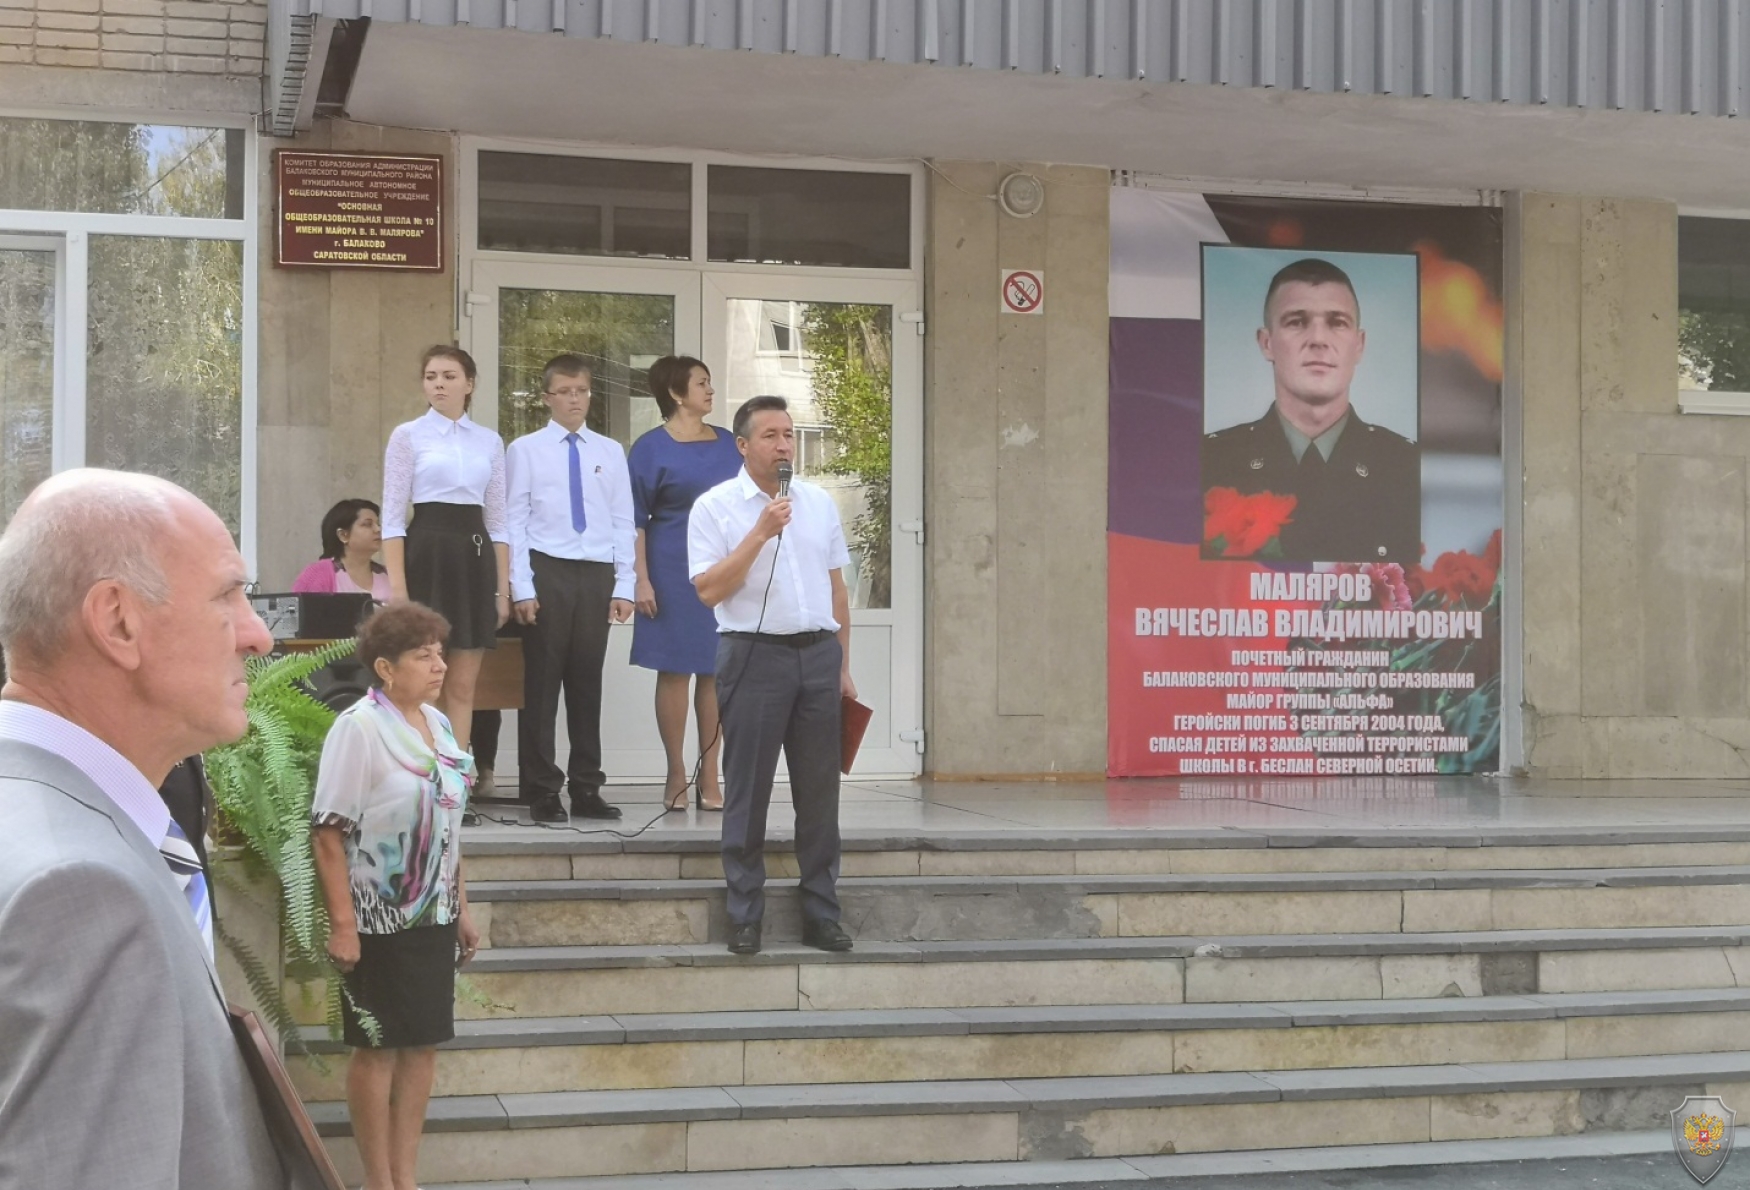 Мероприятие в память Вячеслава Малярова, погибшего при освобождении заложников в г. Беслан, г. Балаково